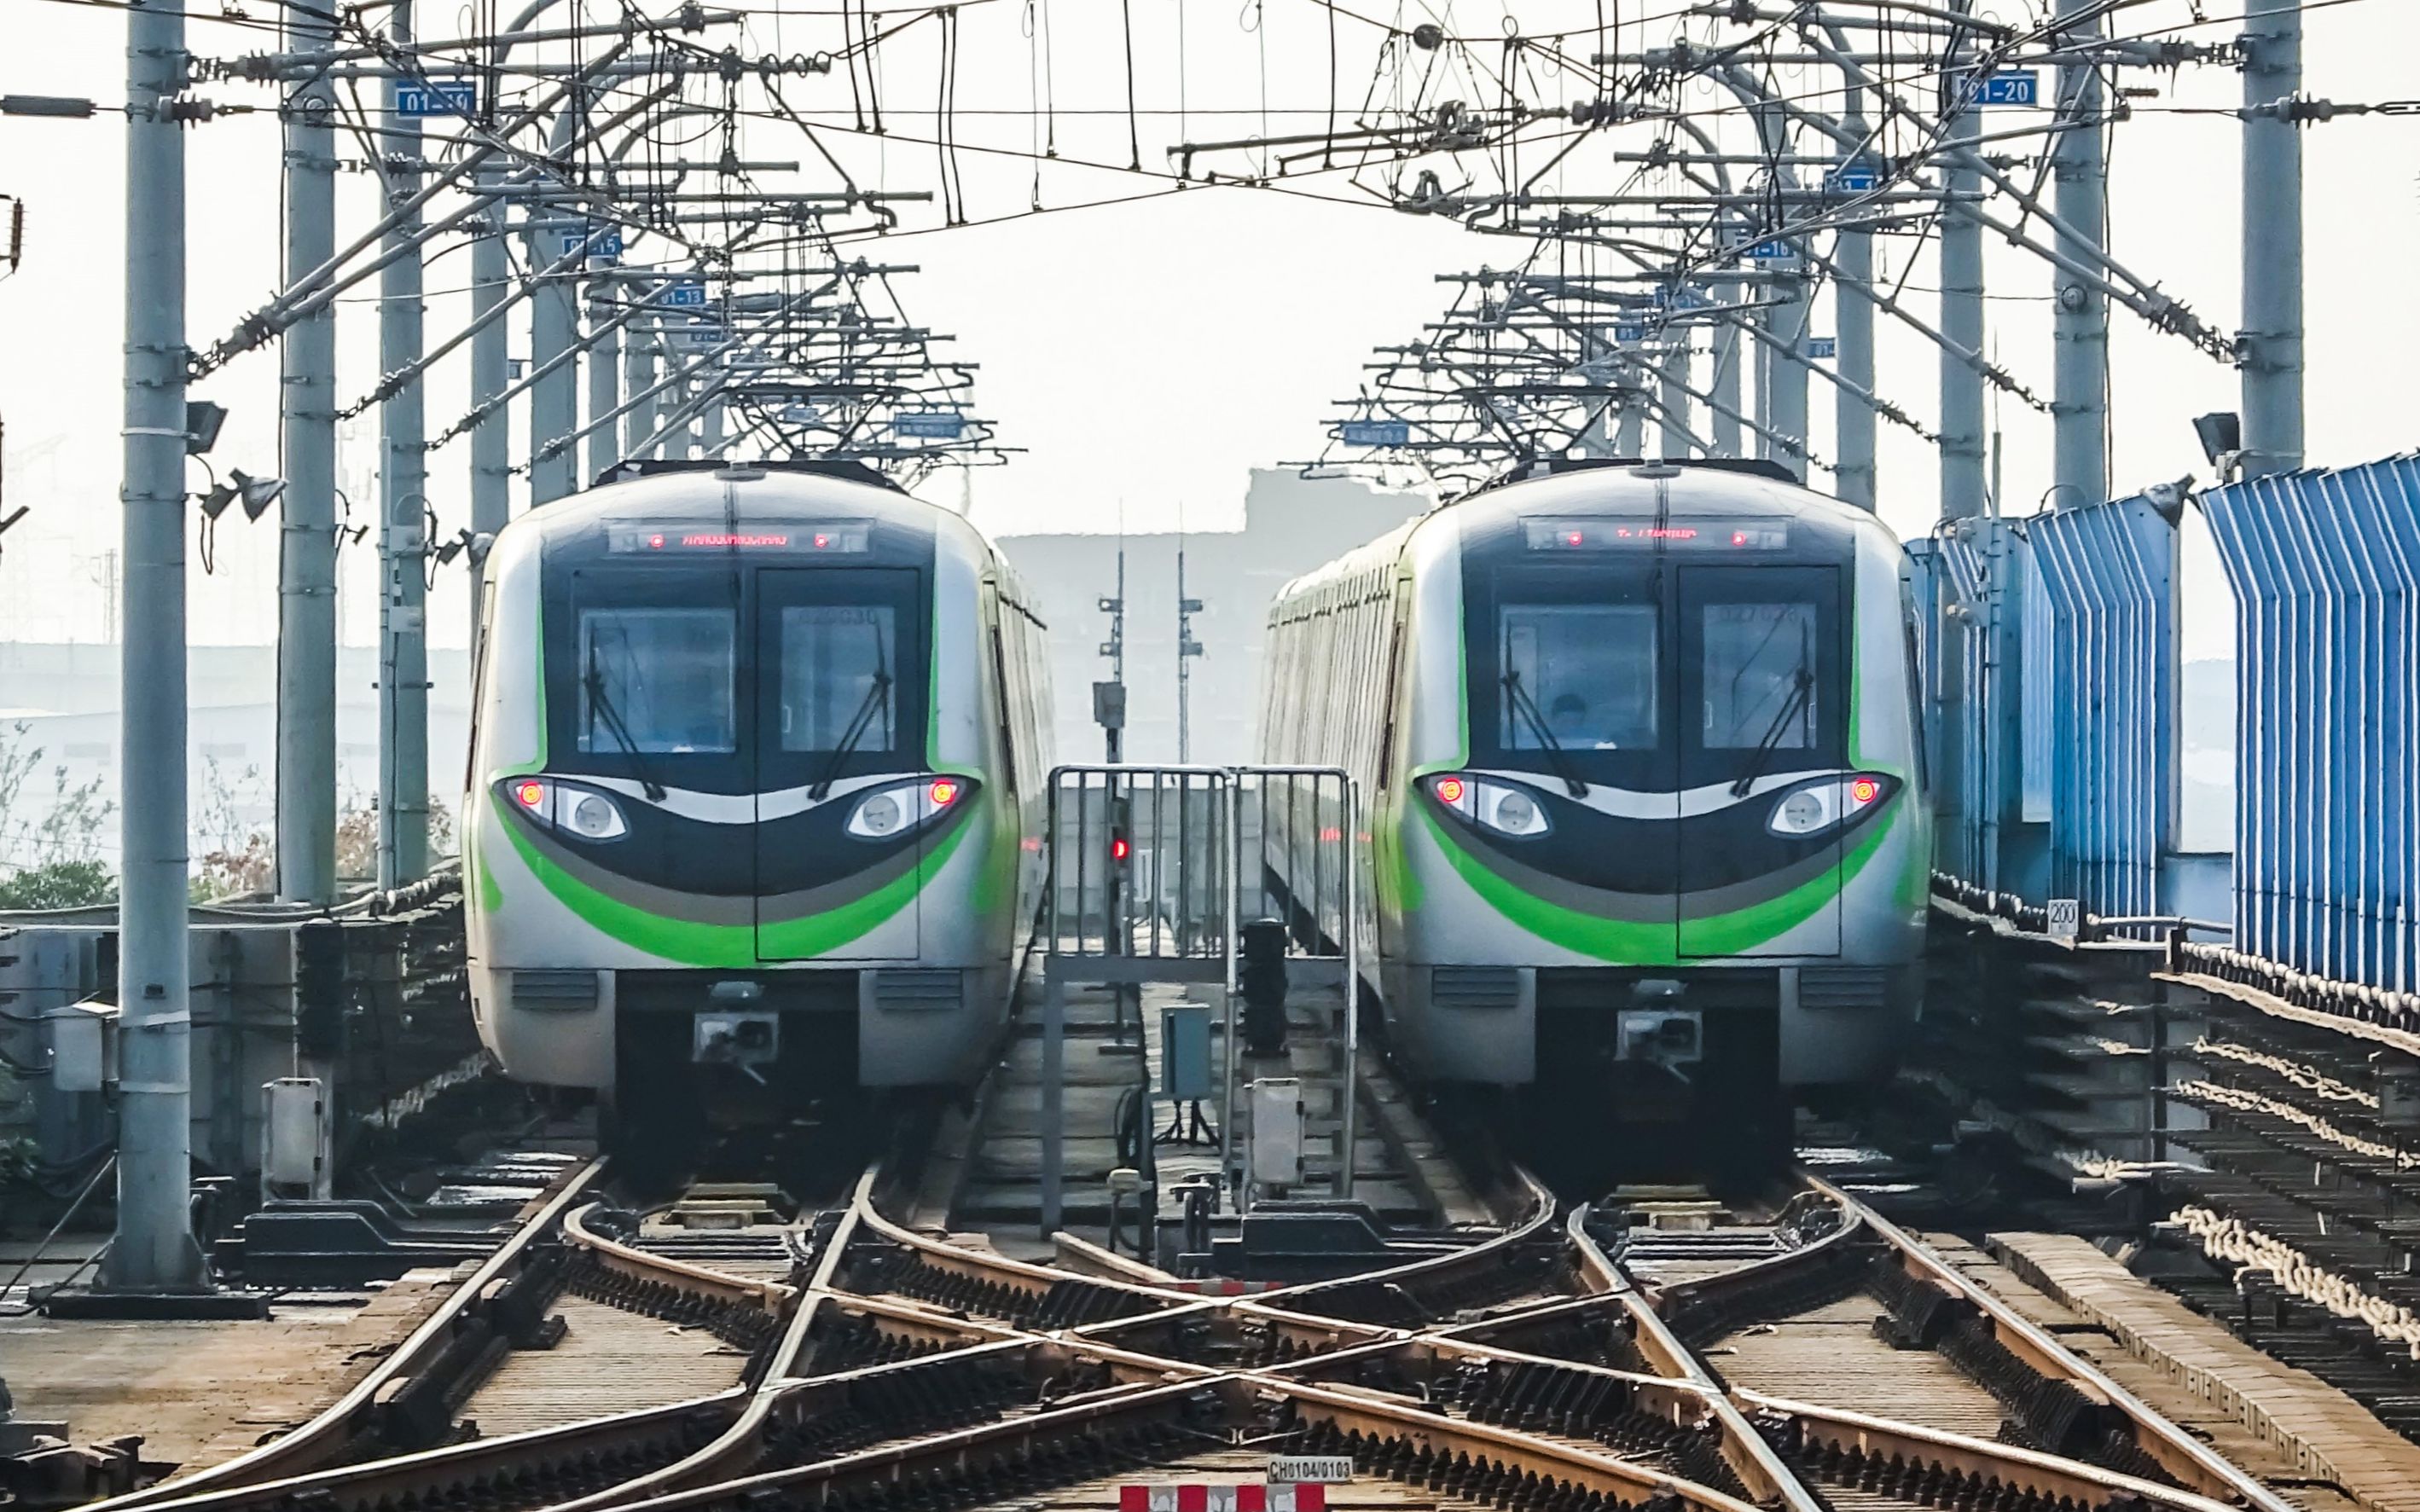 三号线南京地铁图片